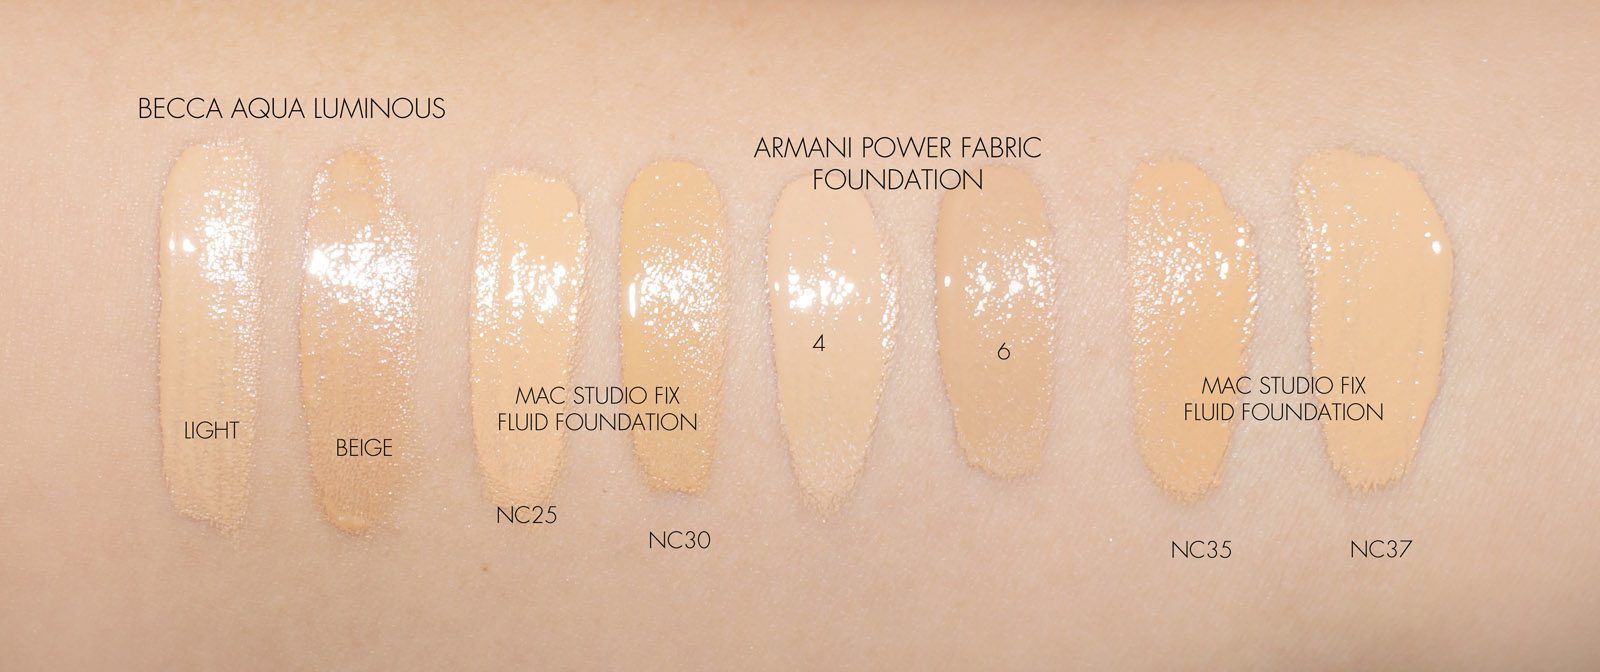 armani foundation colours